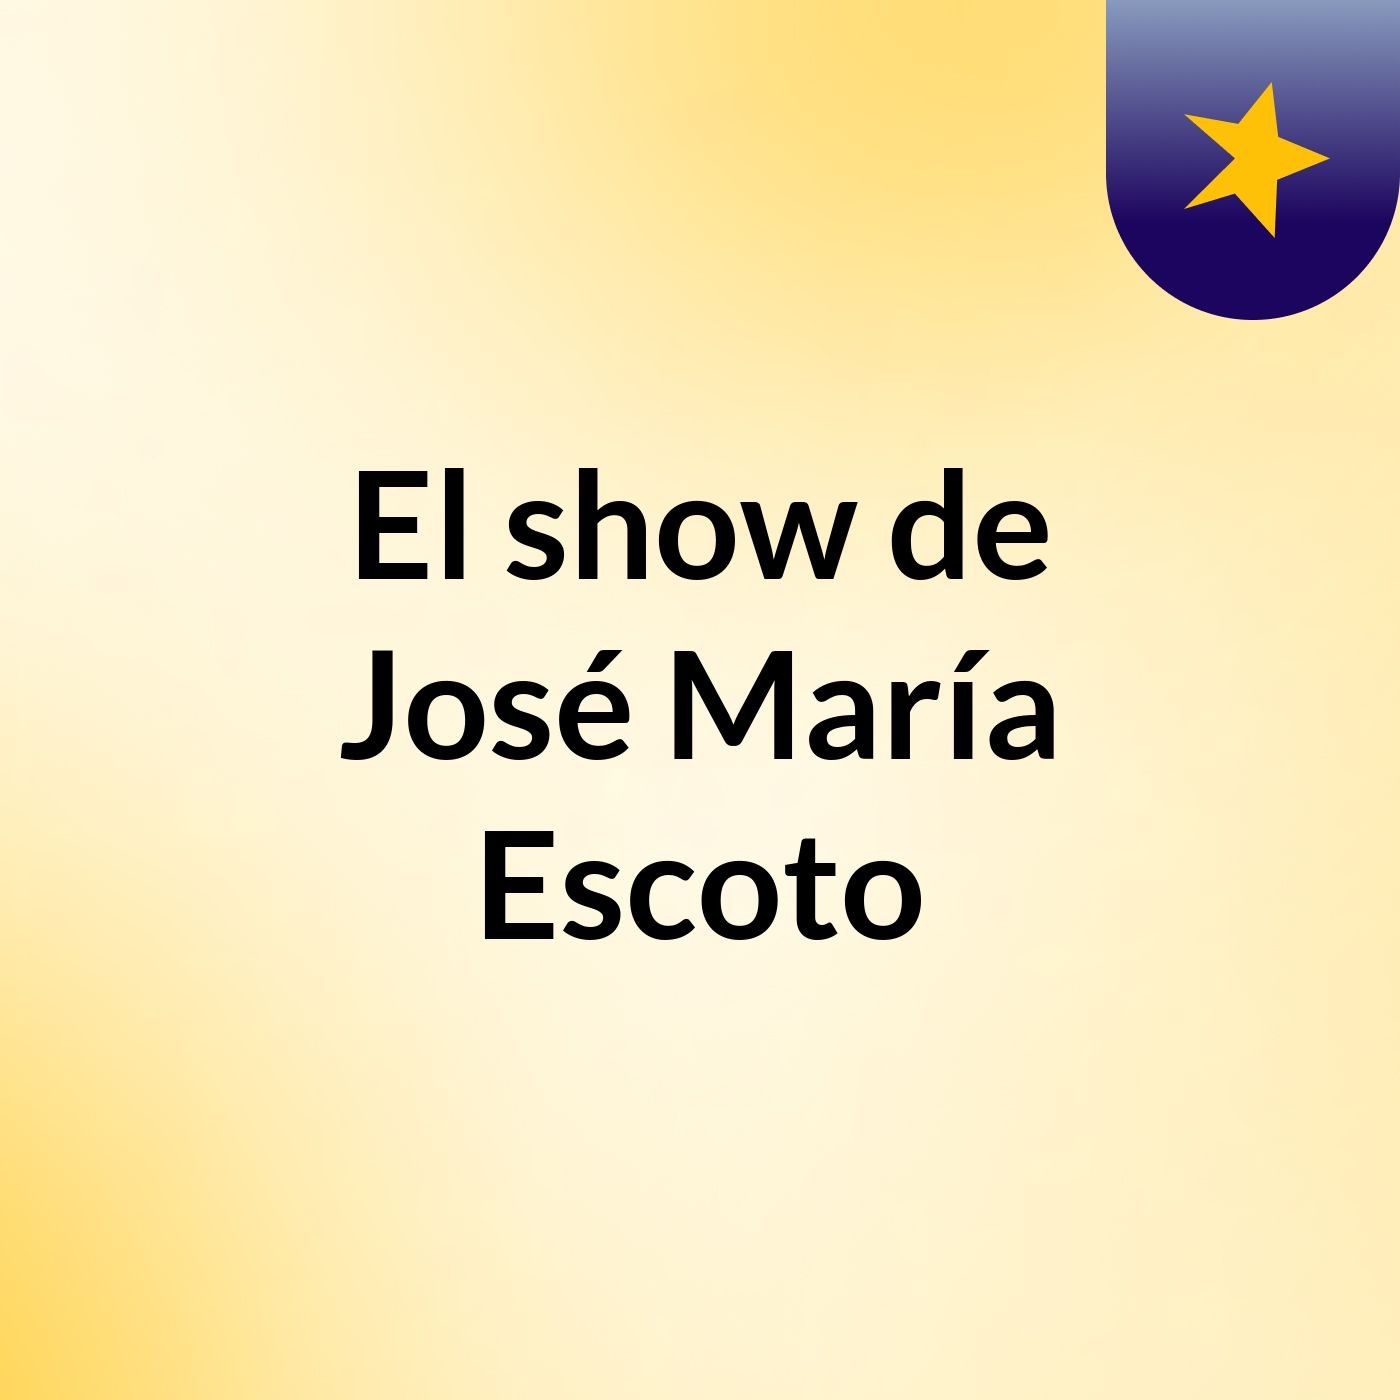 El show de José María Escoto